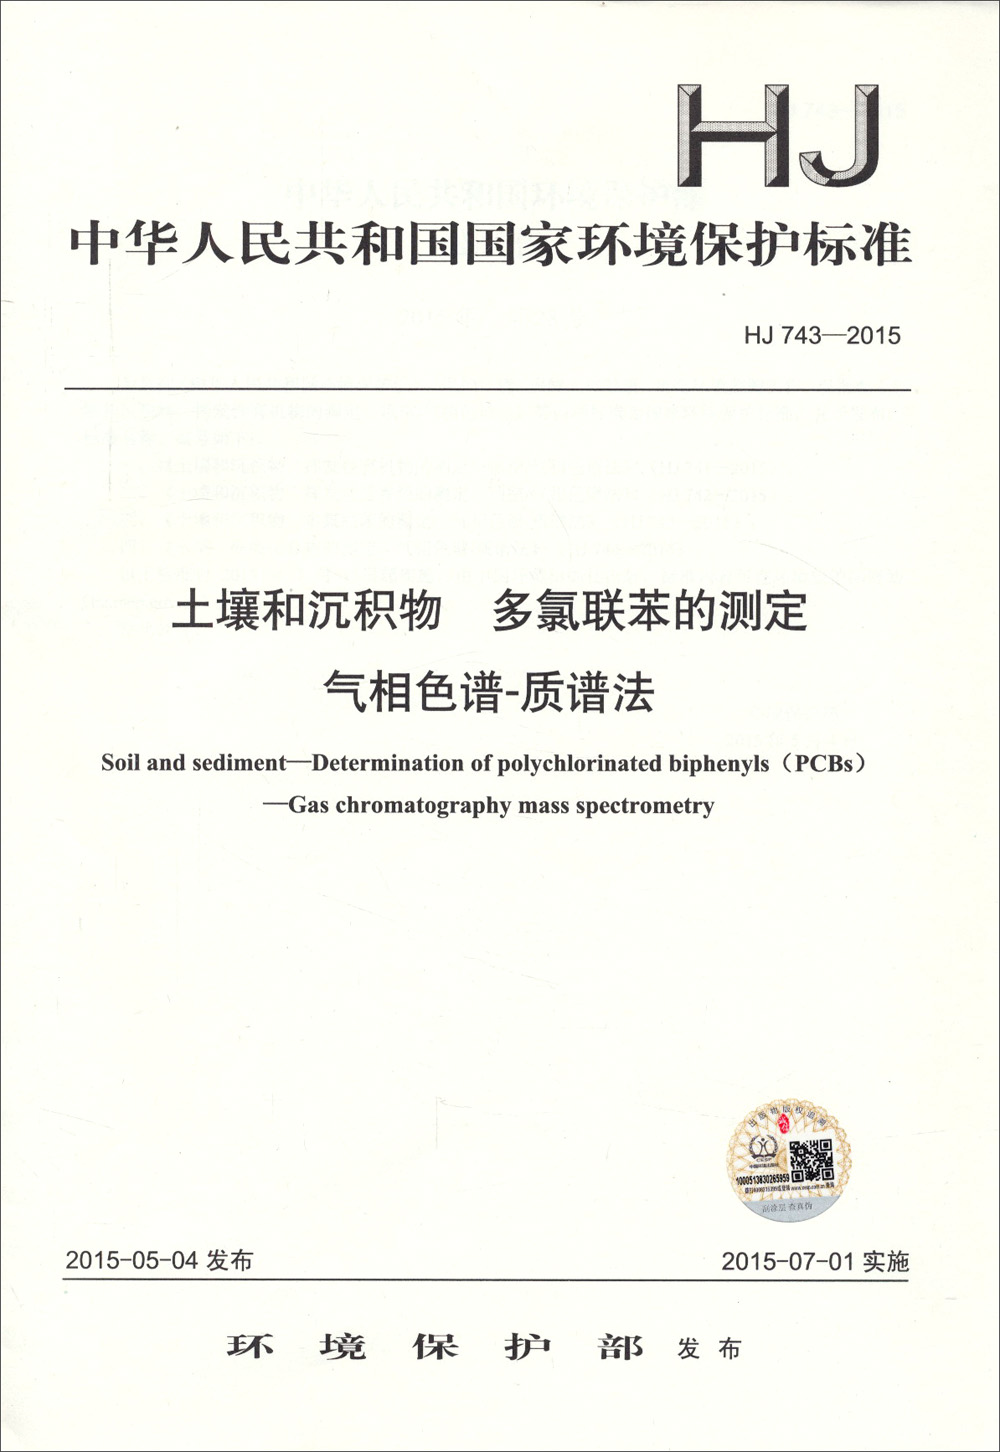 中华人民共和国国家环境保护标准 HJ 743-2015土壤和沉积物 多氯联苯的测定 气相色谱-质谱法